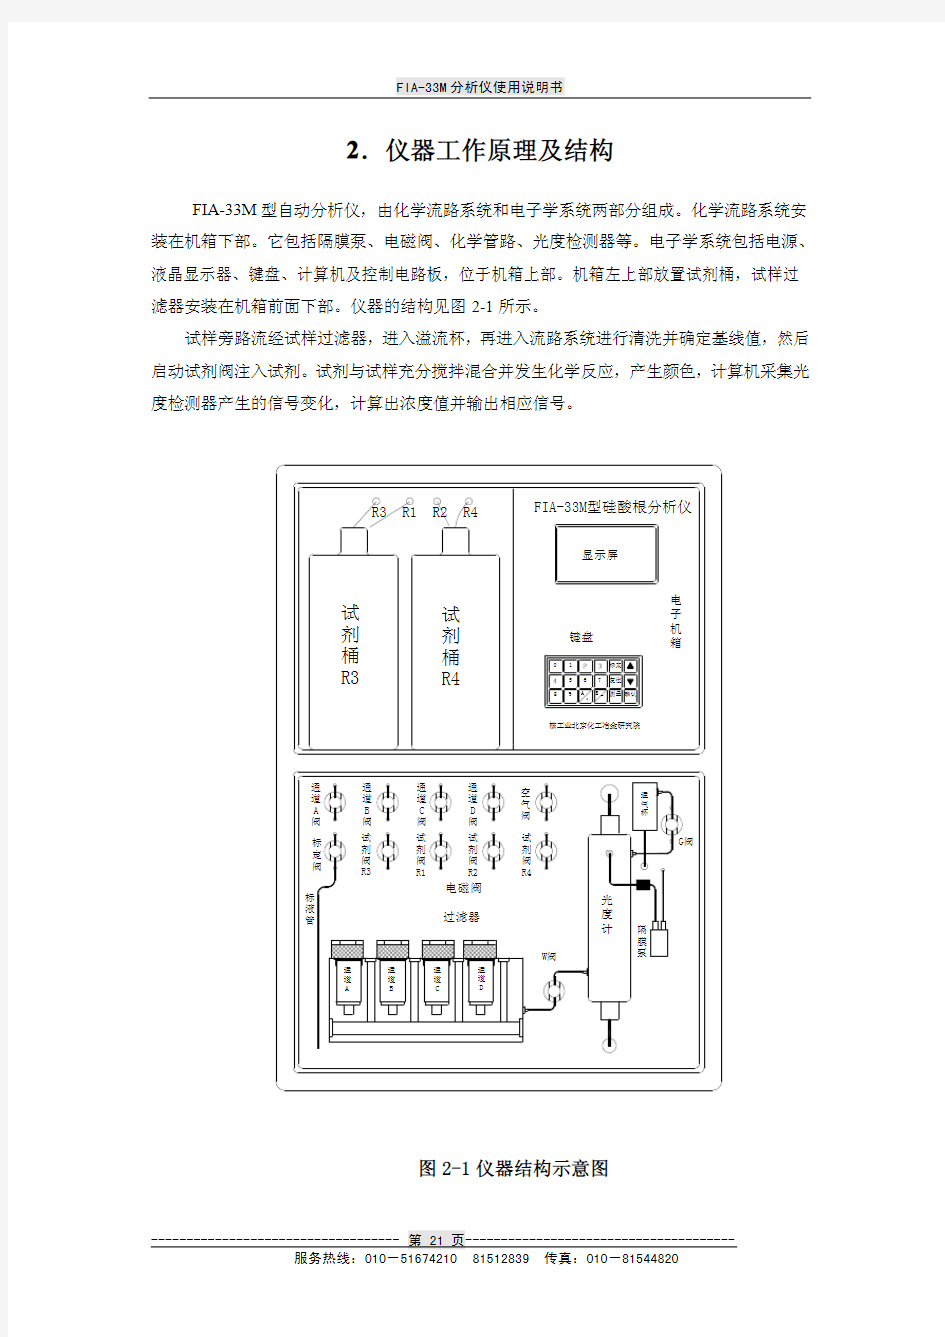 北京核工业硅表操作使用说明书